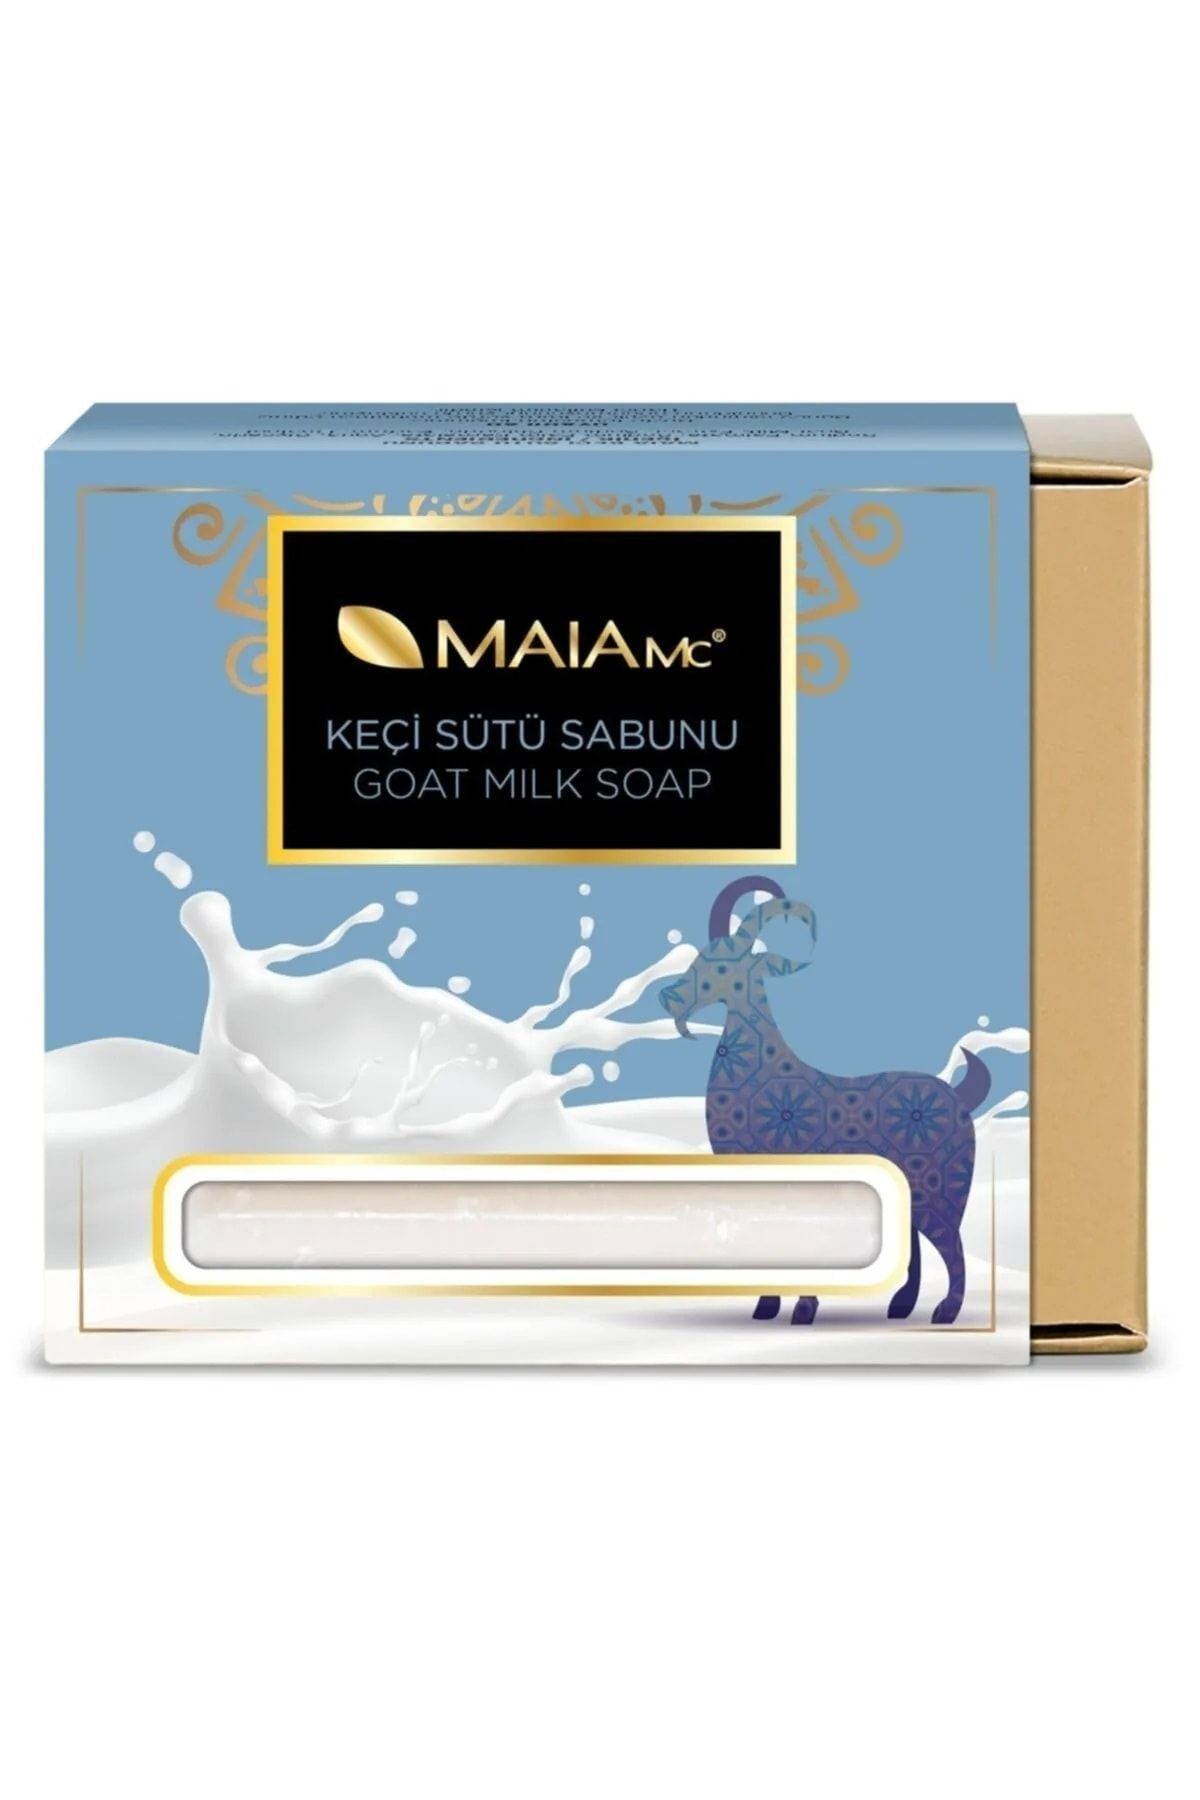 Maia mc Keçi Sütü Sabunu 150 Gr.x 24 Adet Peeling Etkisi Sağlar Ve Hassas Ciltlere Yoğun Nem Verir